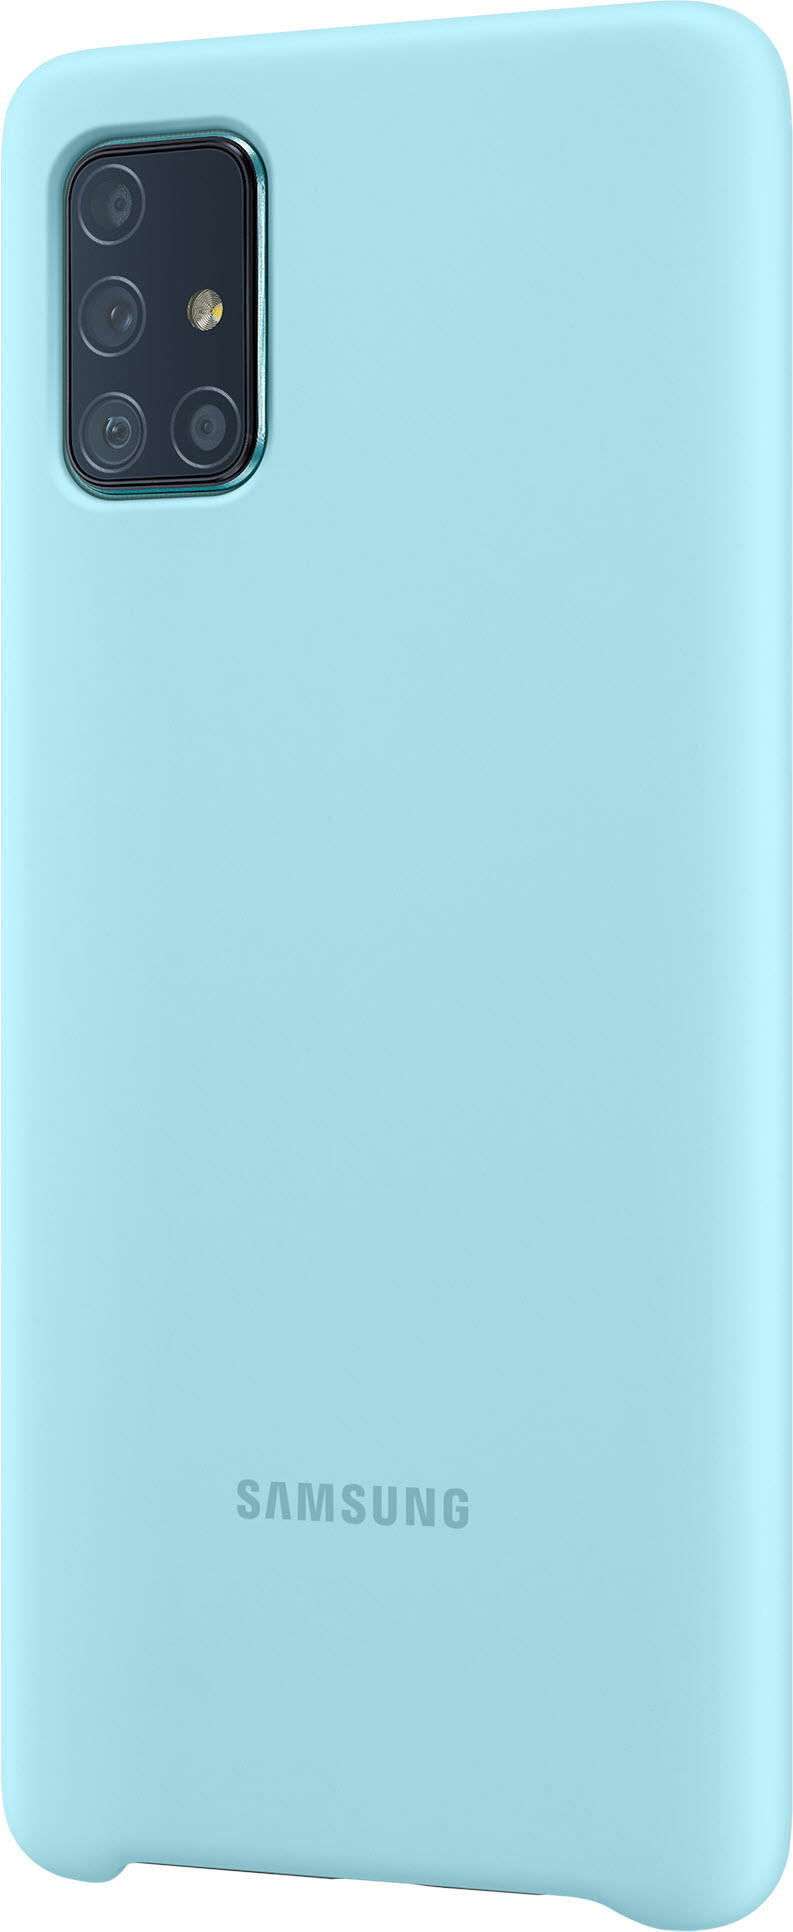 SAMSUNG EF-PA715, A71, Galaxy Blau Backcover, Samsung